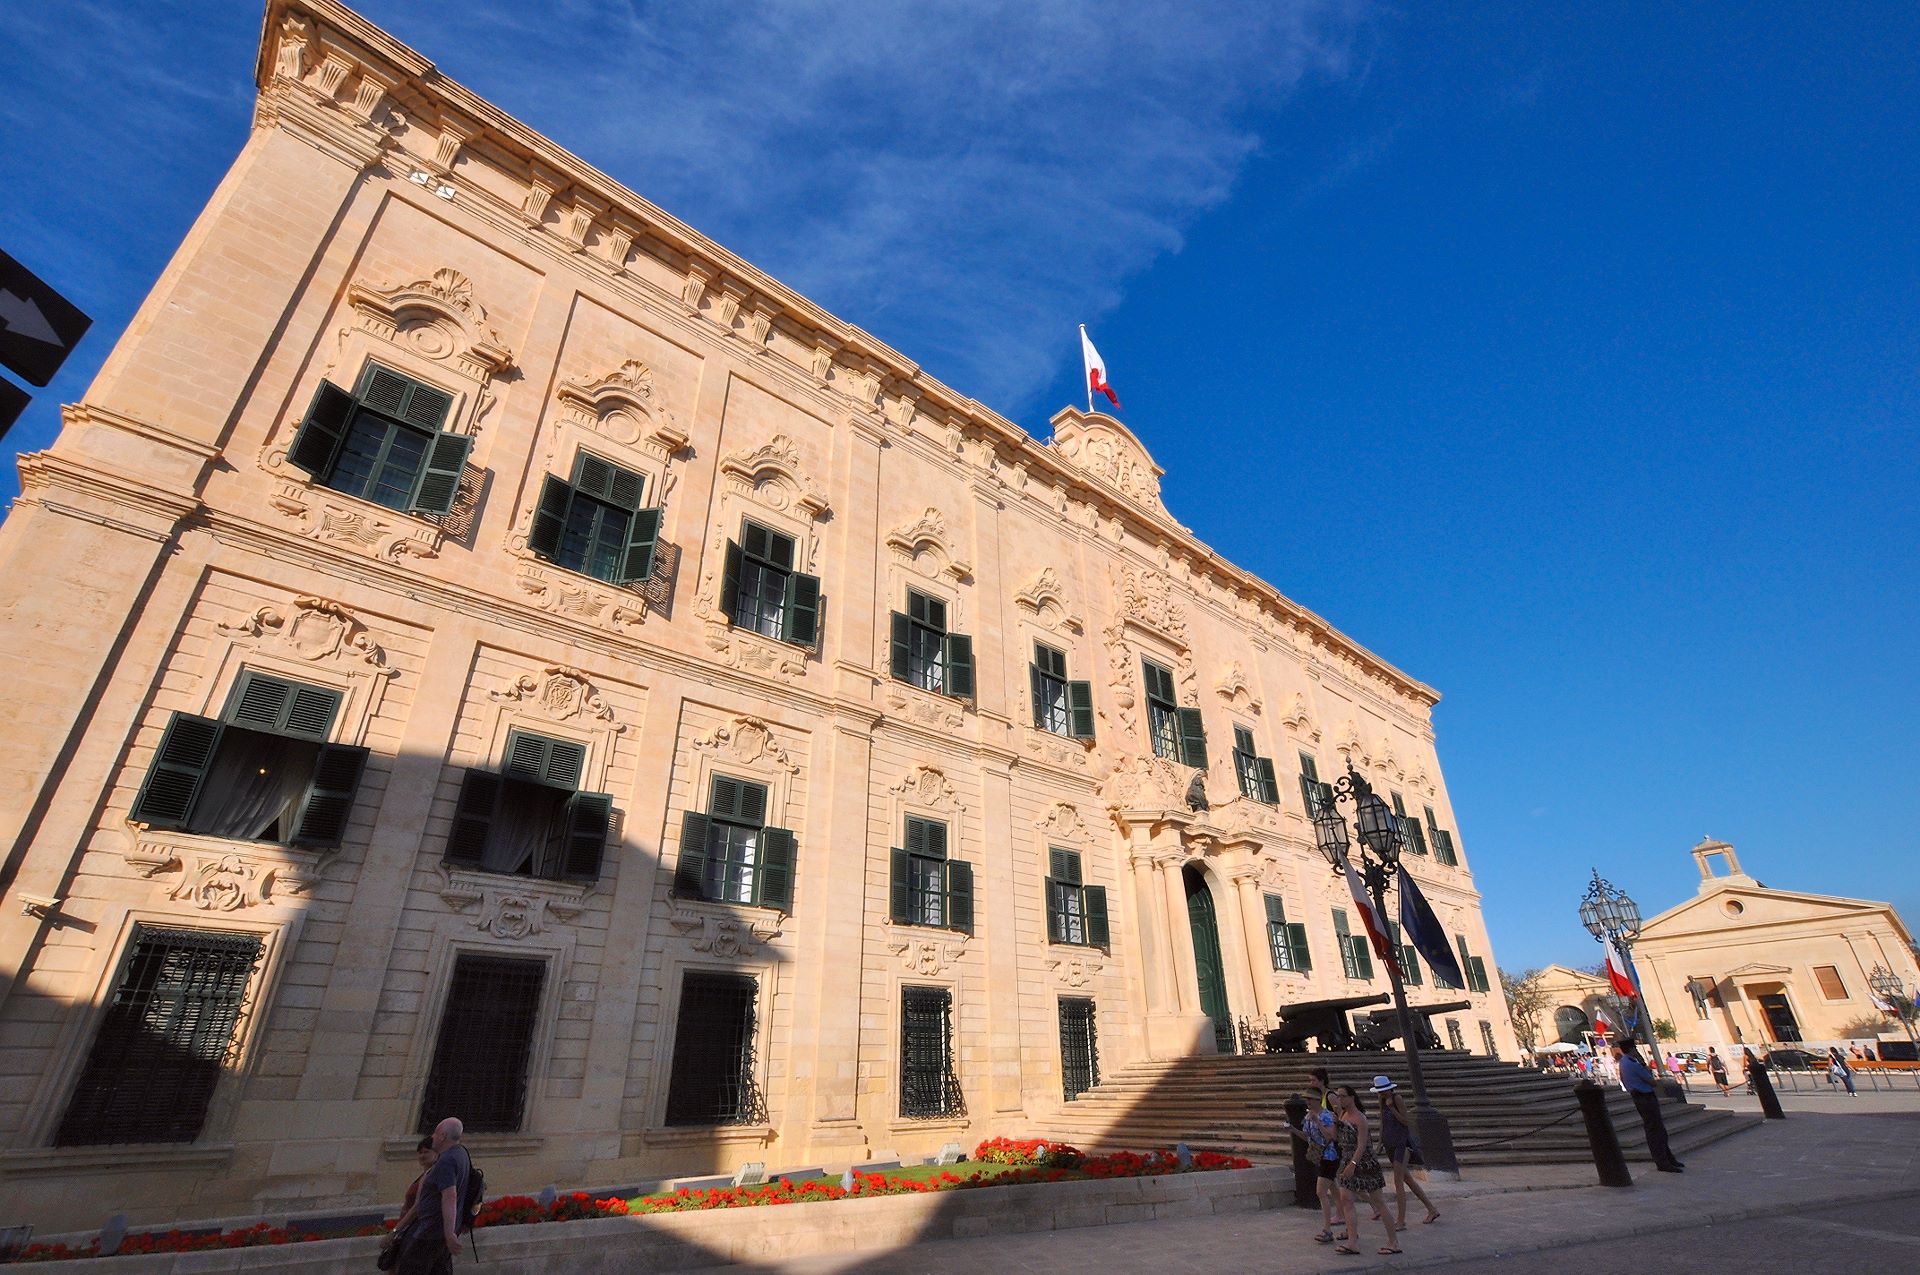 Die Herberge der kastilischen Zunge (Auberge de Castile et Léon) dient heute dem maltesischen Ministerpräsidenten als Amtssitz